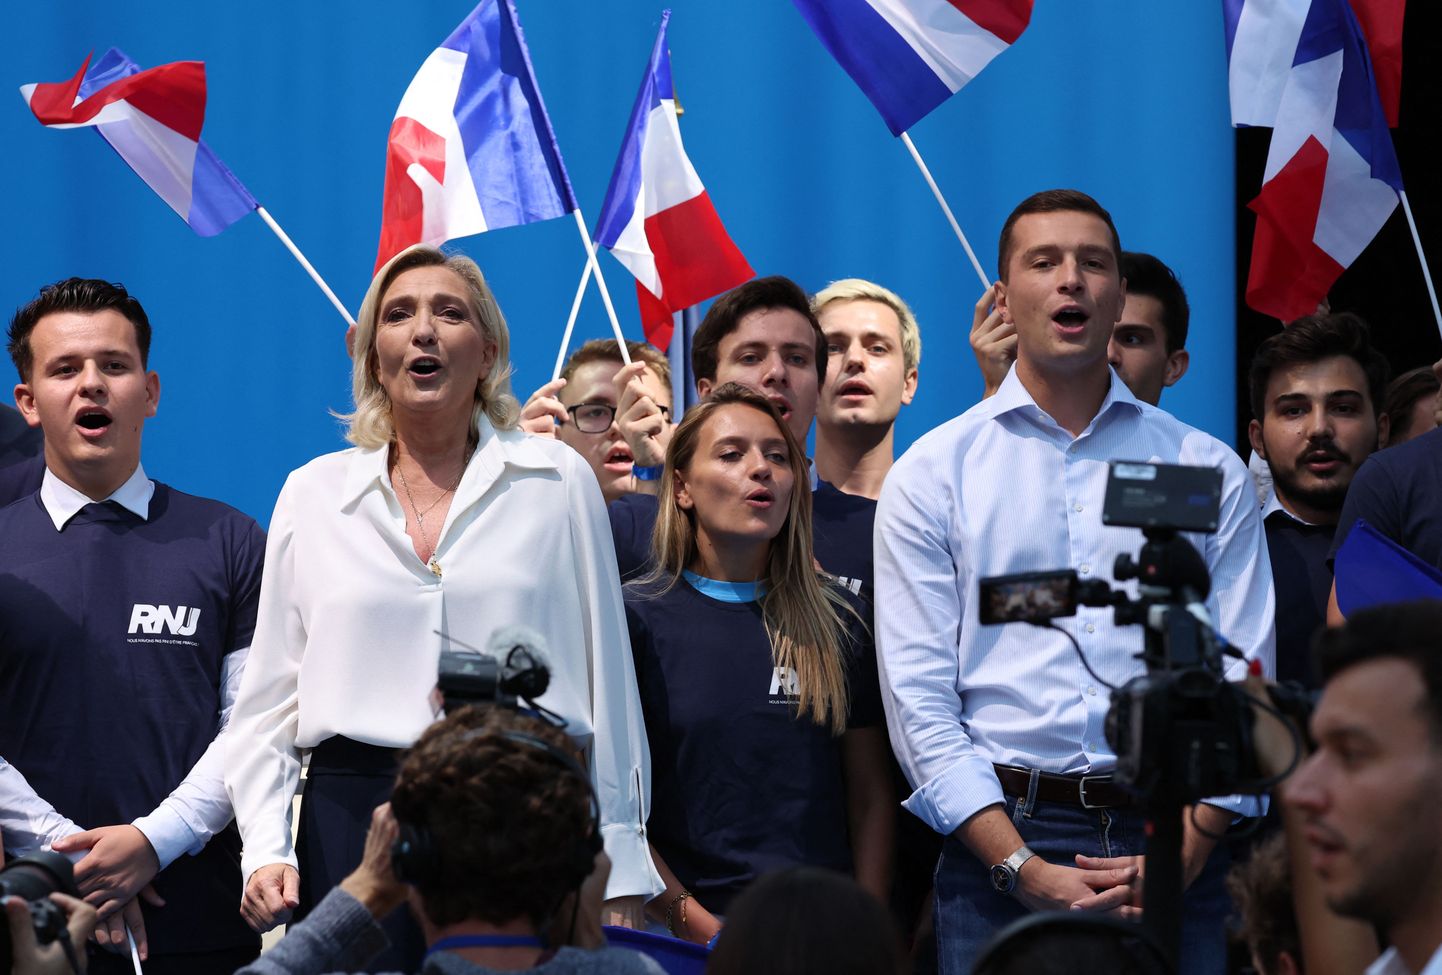 Rassemblement Nationali presidendikandidaat Marine Le Pen (esiplaanil vasakul) ja erakonna juht Jordan Bardella (paremal) partei üritusel tänavu septembris.